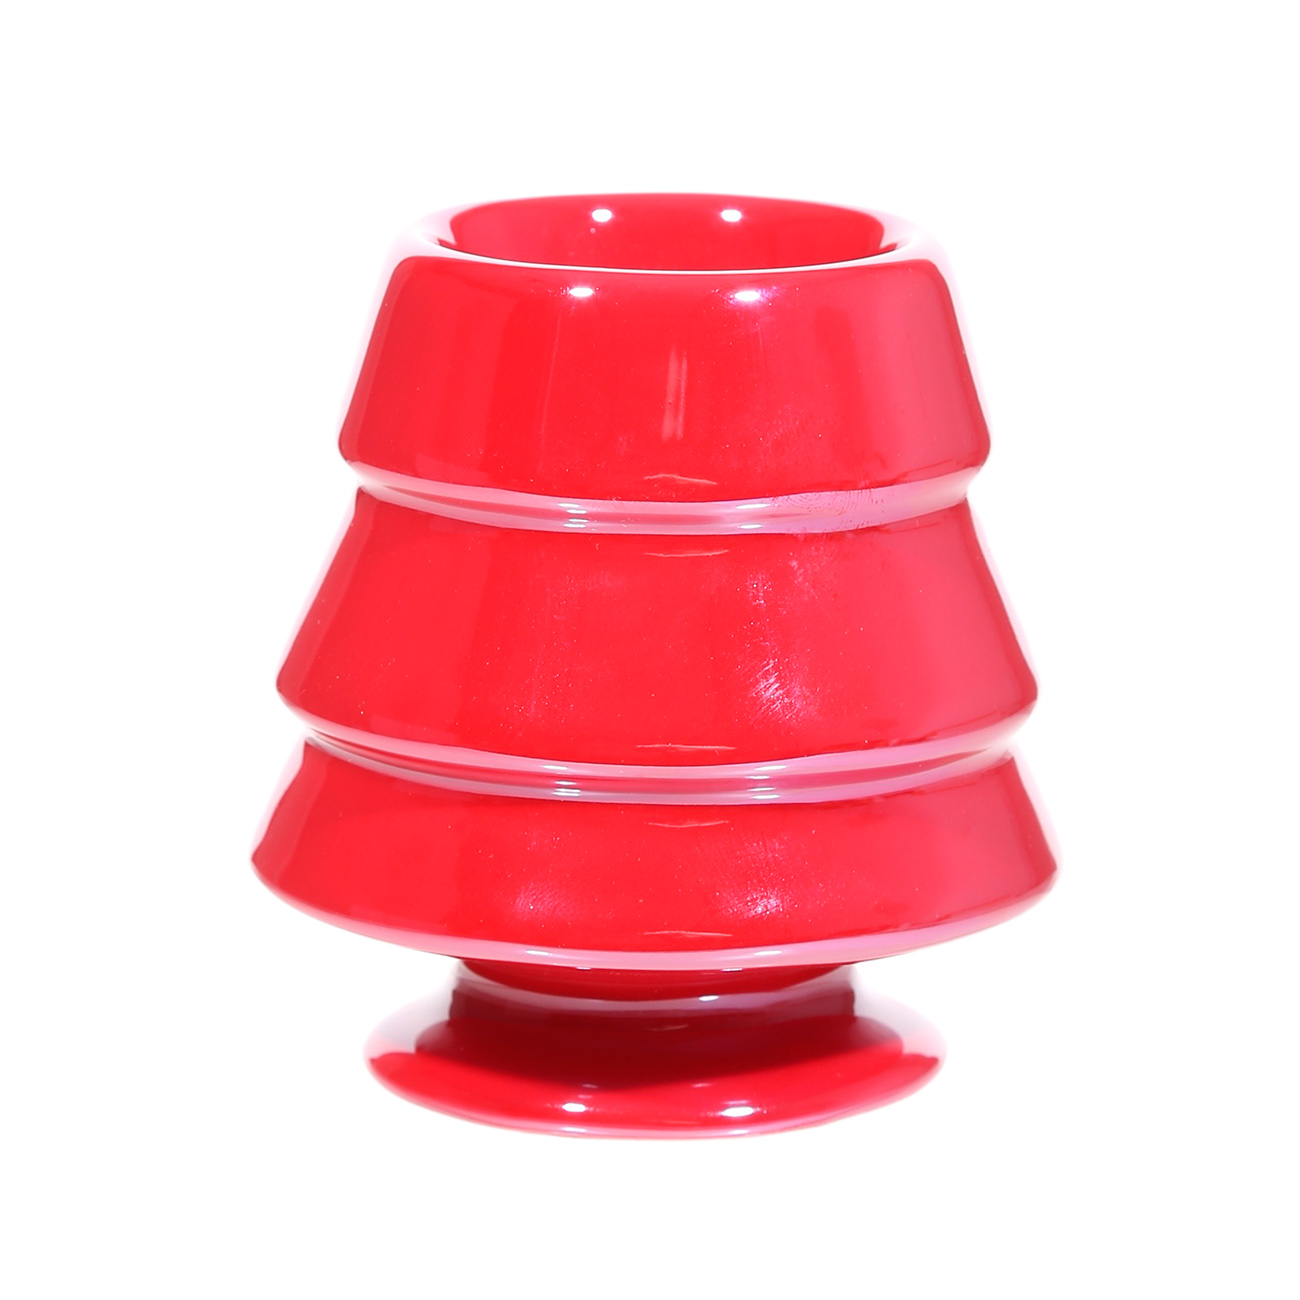 Подсвечник, 8 см, для чайной свечи, керамика, красный, Елка, Winter bright